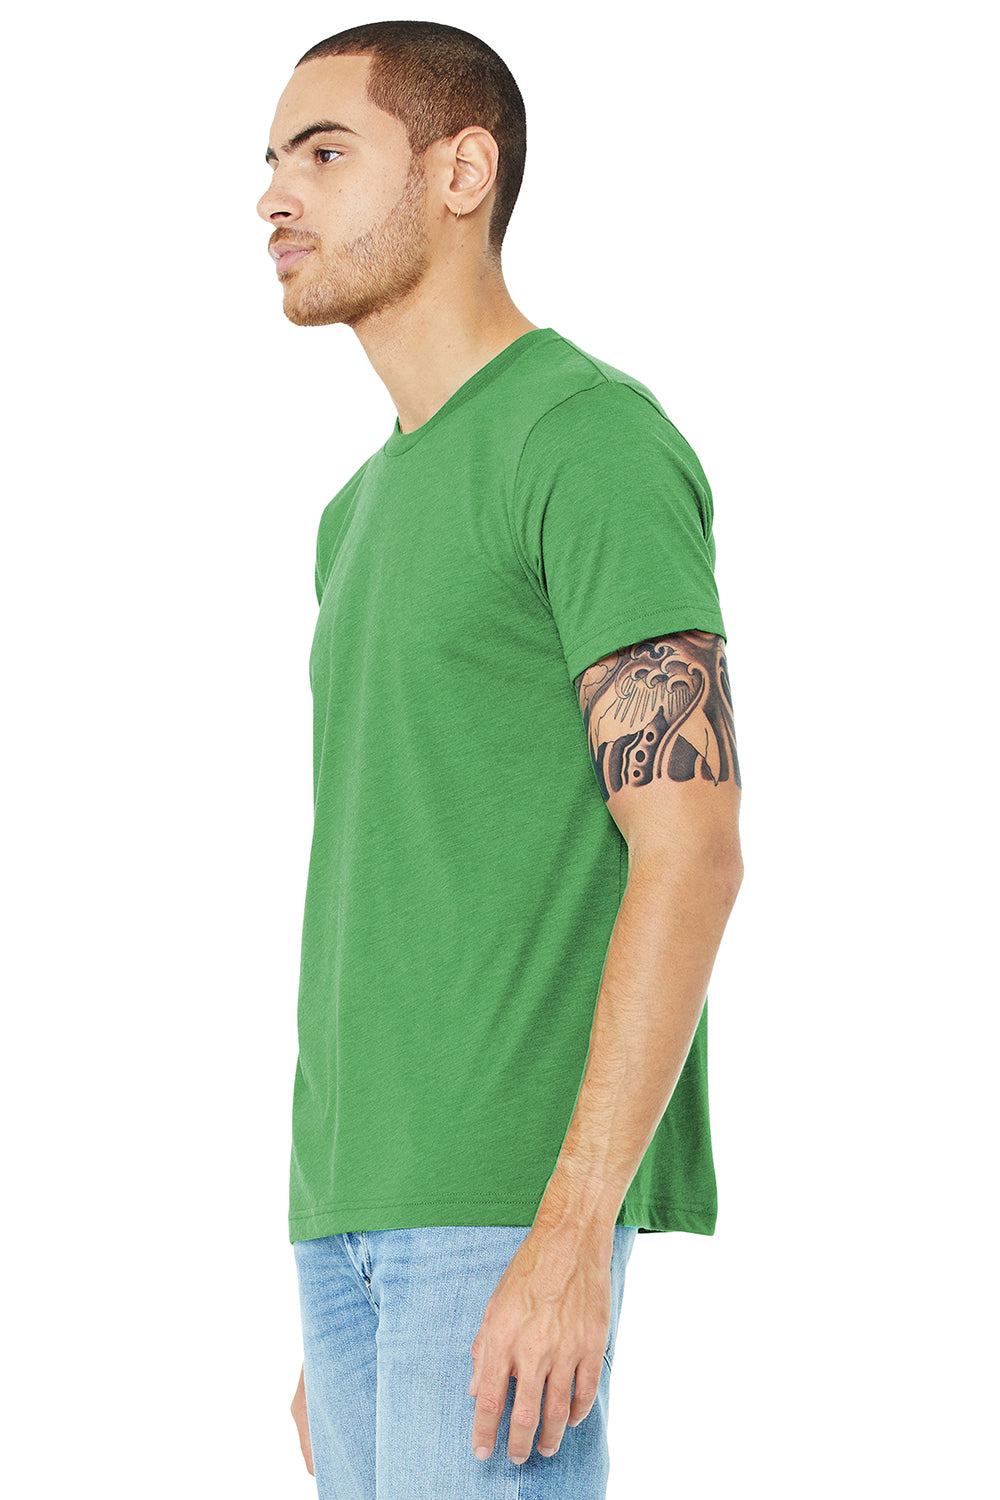 Bella + Canvas BC3413/3413C/3413 Mens Short Sleeve Crewneck T-Shirt Green Model 3Q